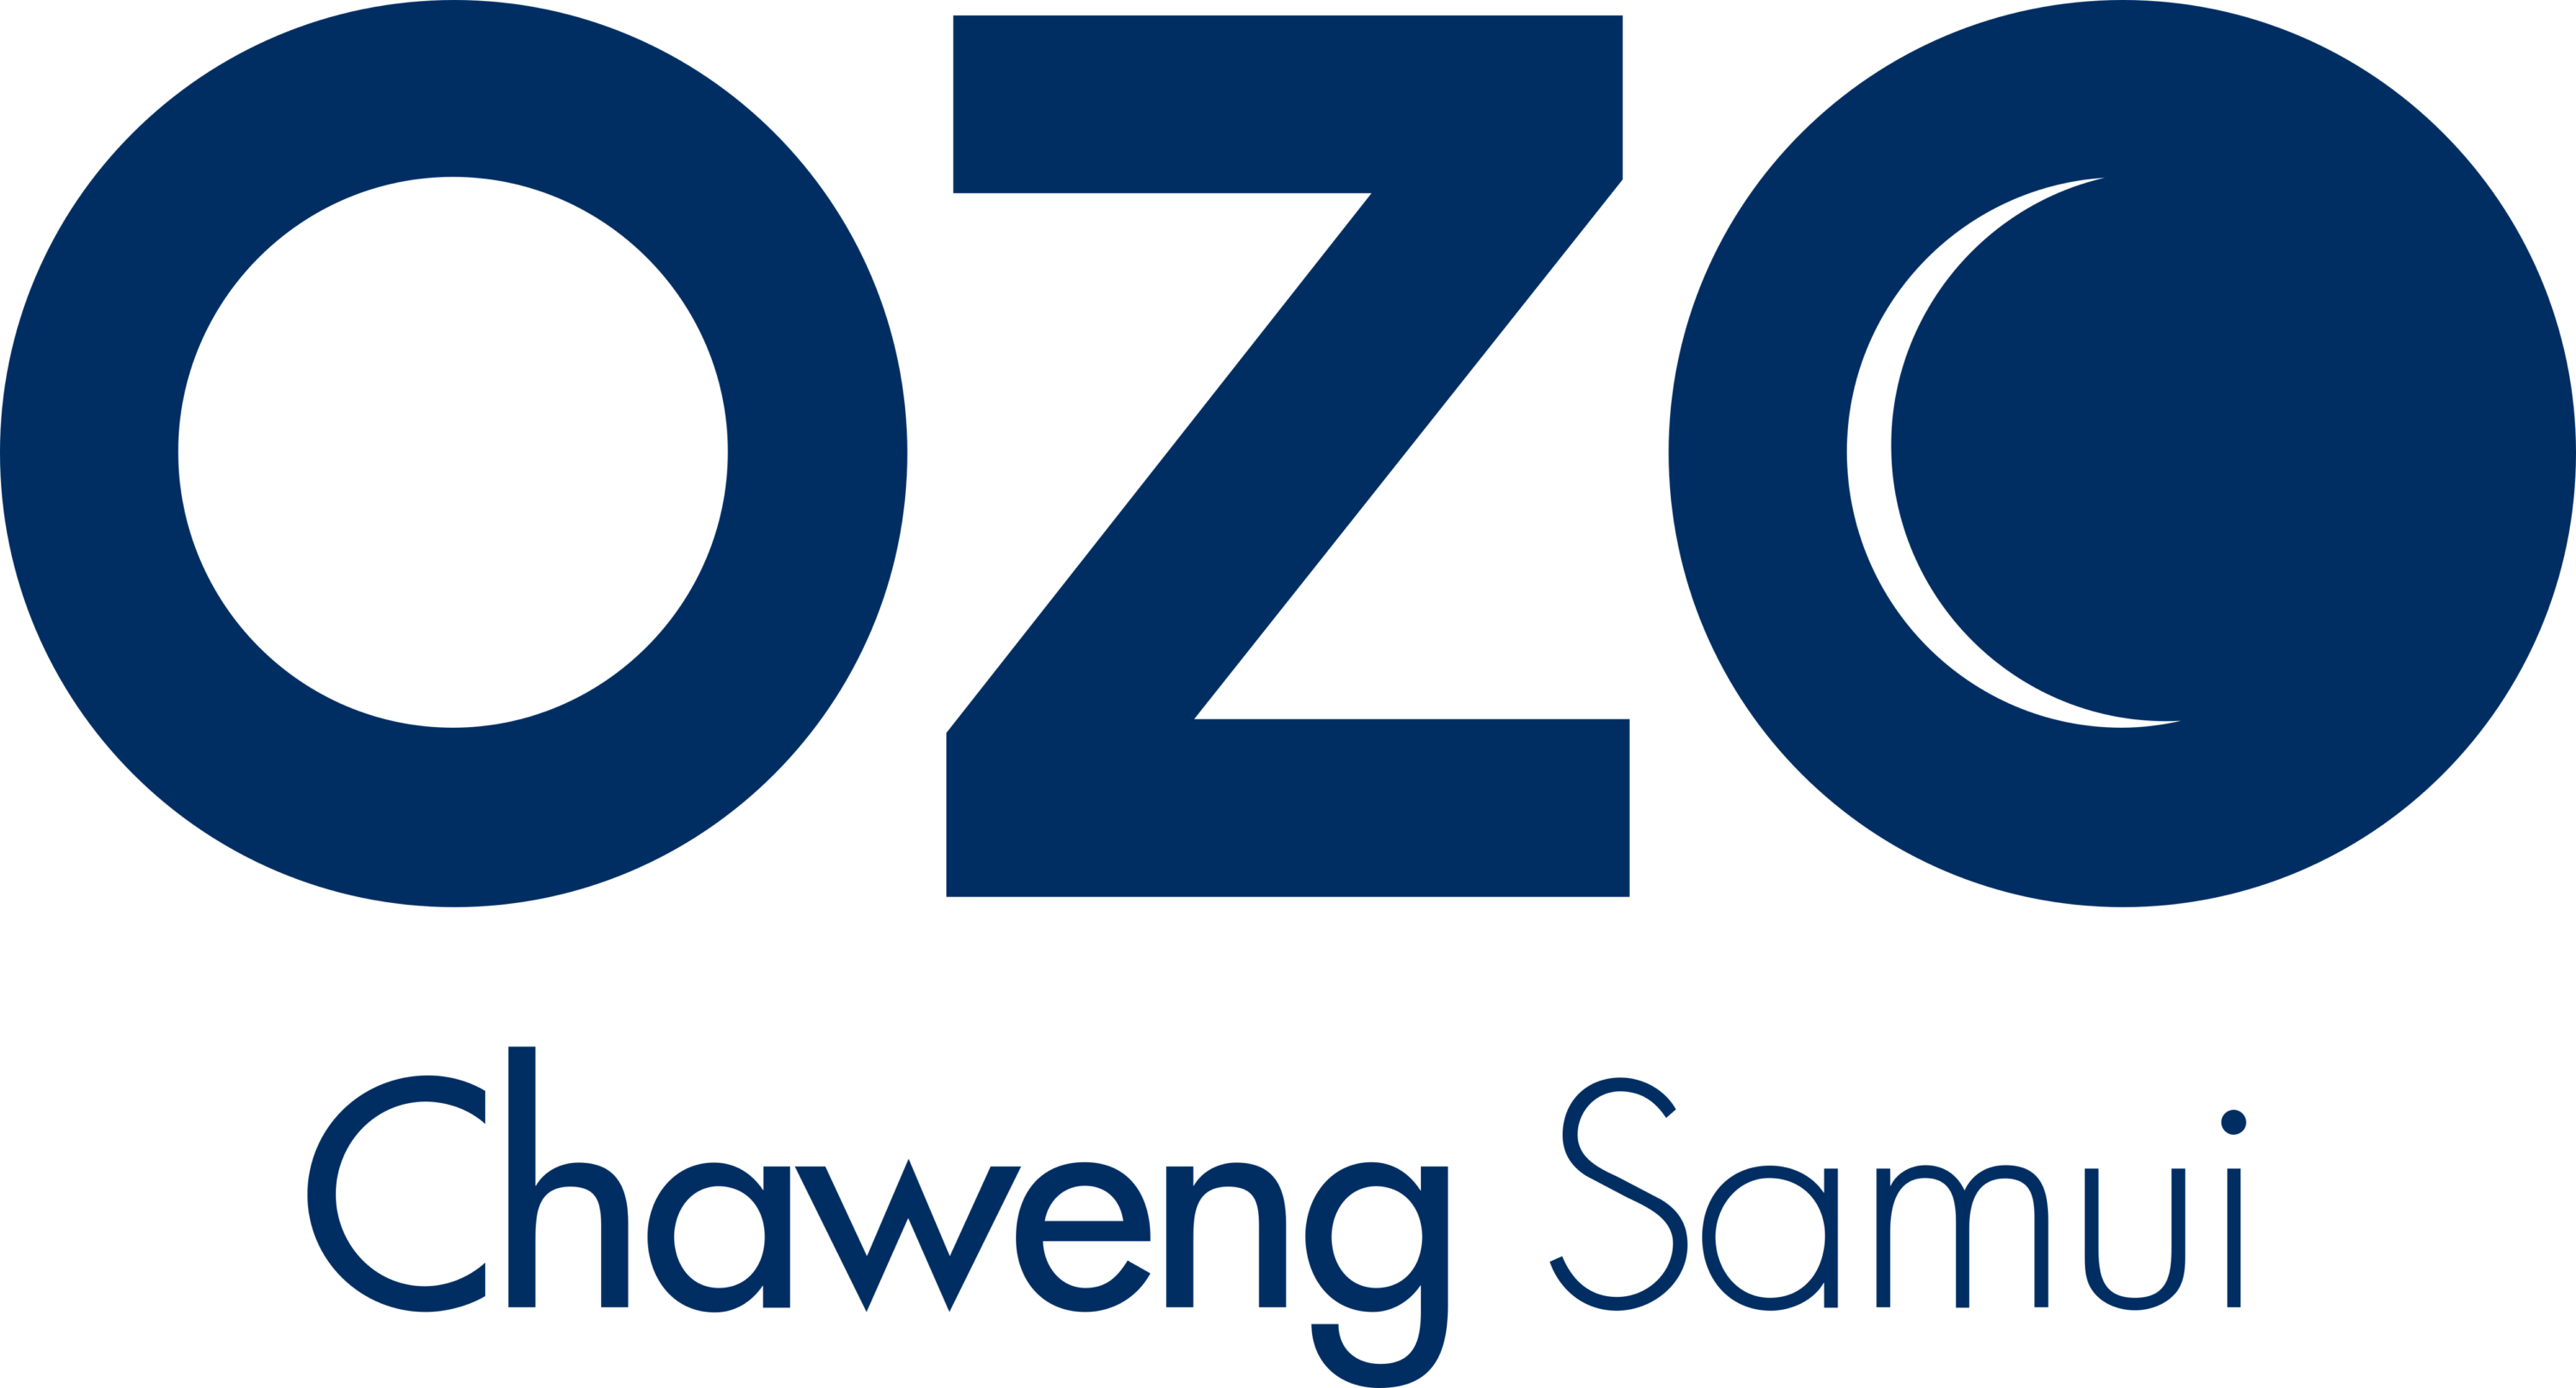 OZO Chaweng Samui Logo